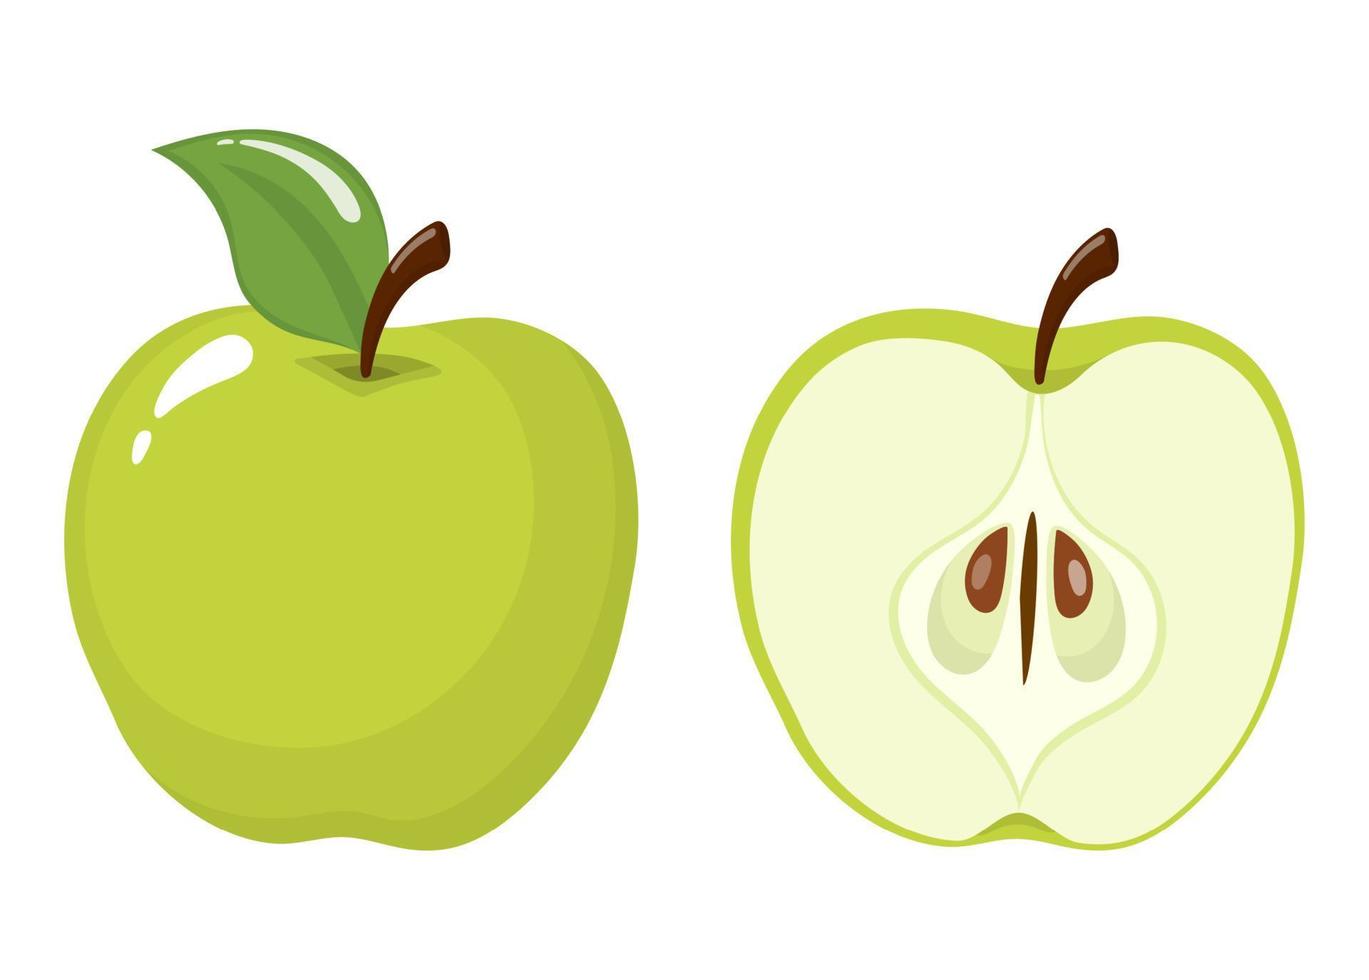 fresca inteira e meia maçã verde isolada no fundo branco. fruta orgânica. estilo de desenho animado. ilustração vetorial para qualquer projeto. vetor